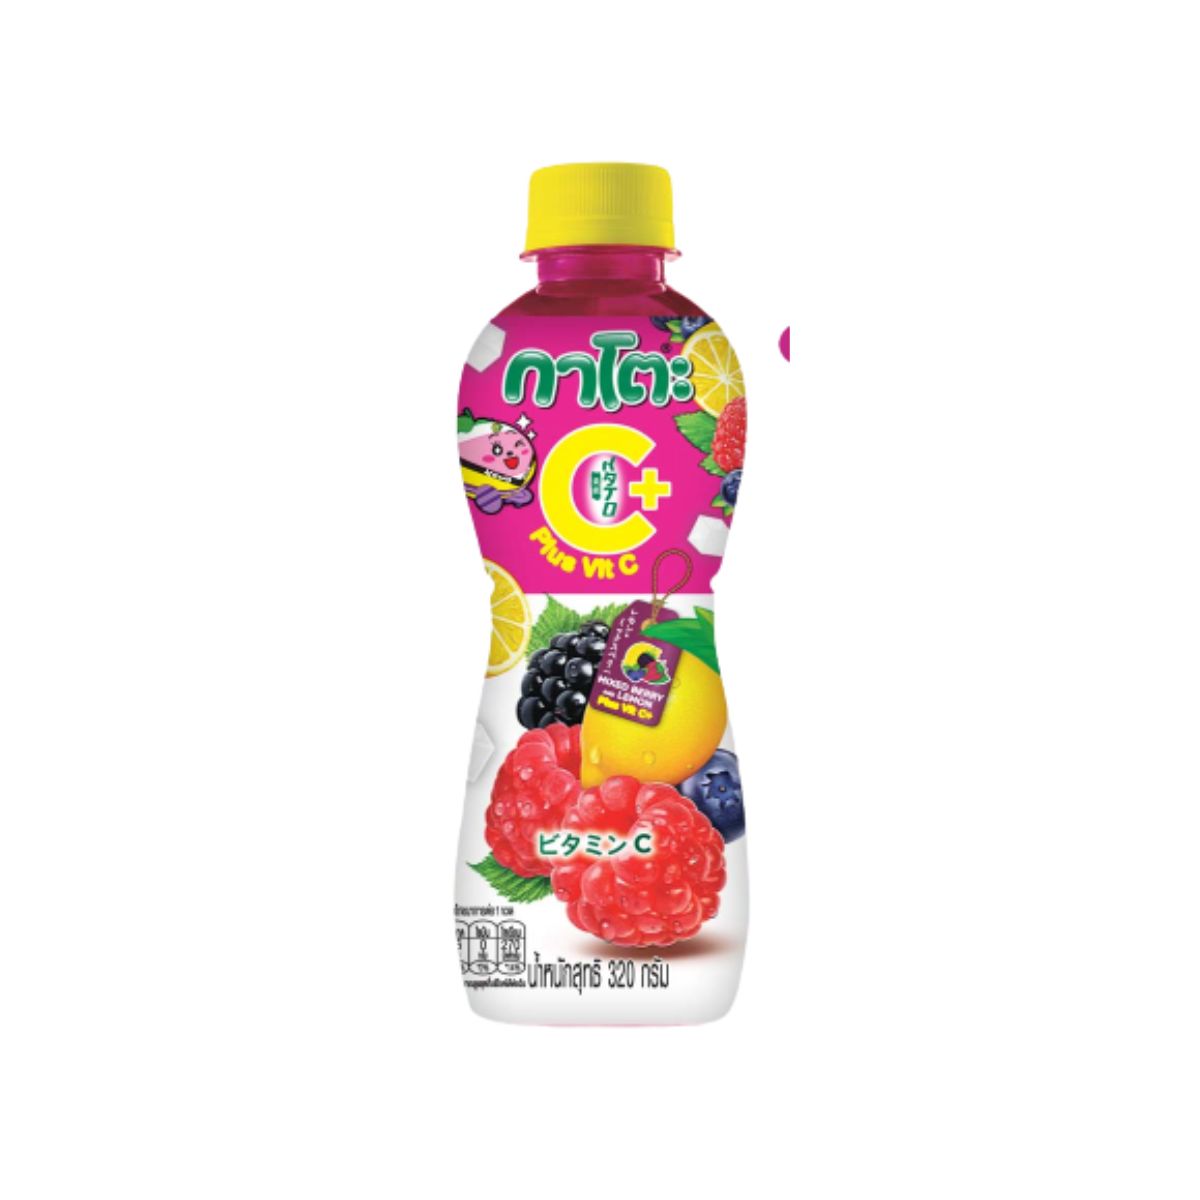 Kato Mixed Berry & Lemon Plus Vit C+ - 320 ml